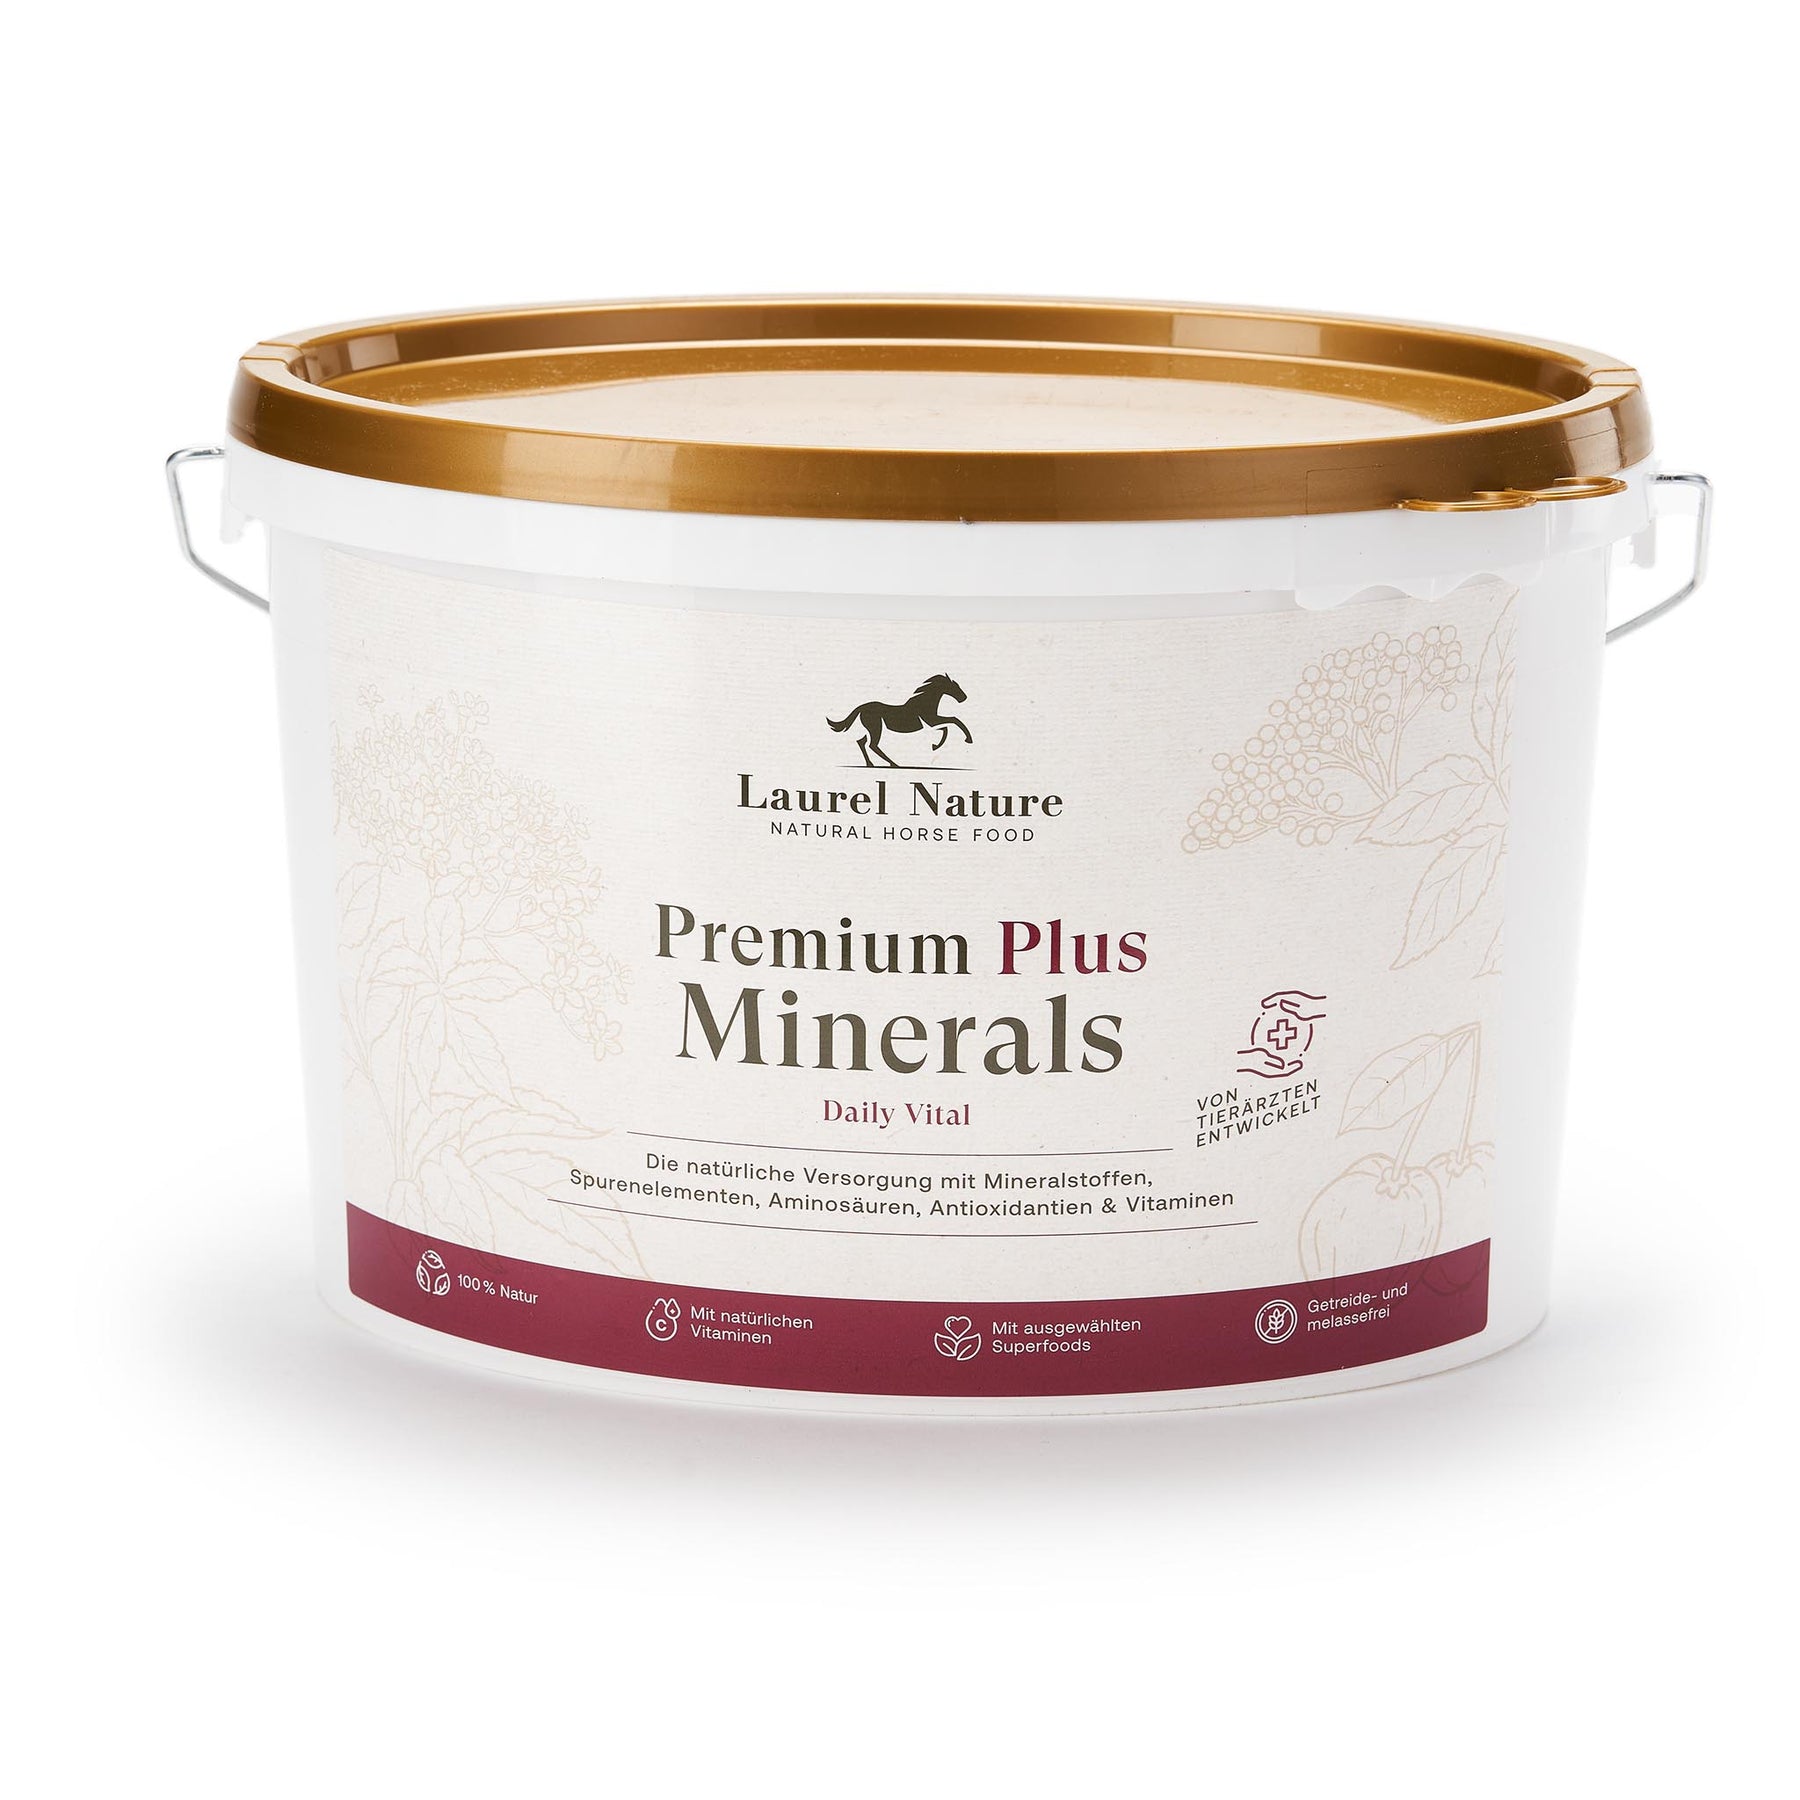 Premium Plus Minerals